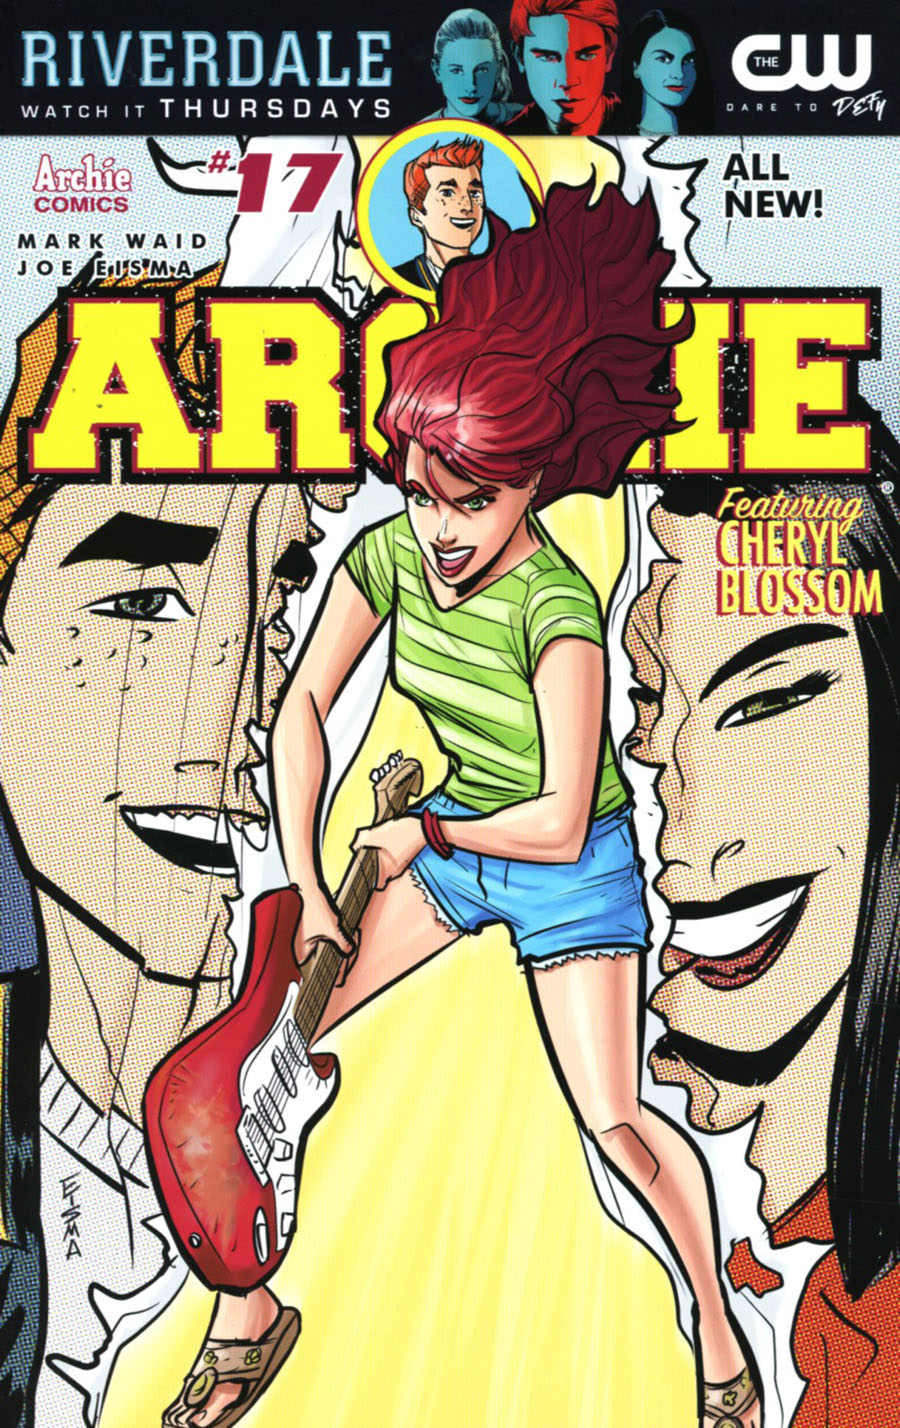 Archie Vol 2 #17 Cover A Regular Joe Eisma Cover